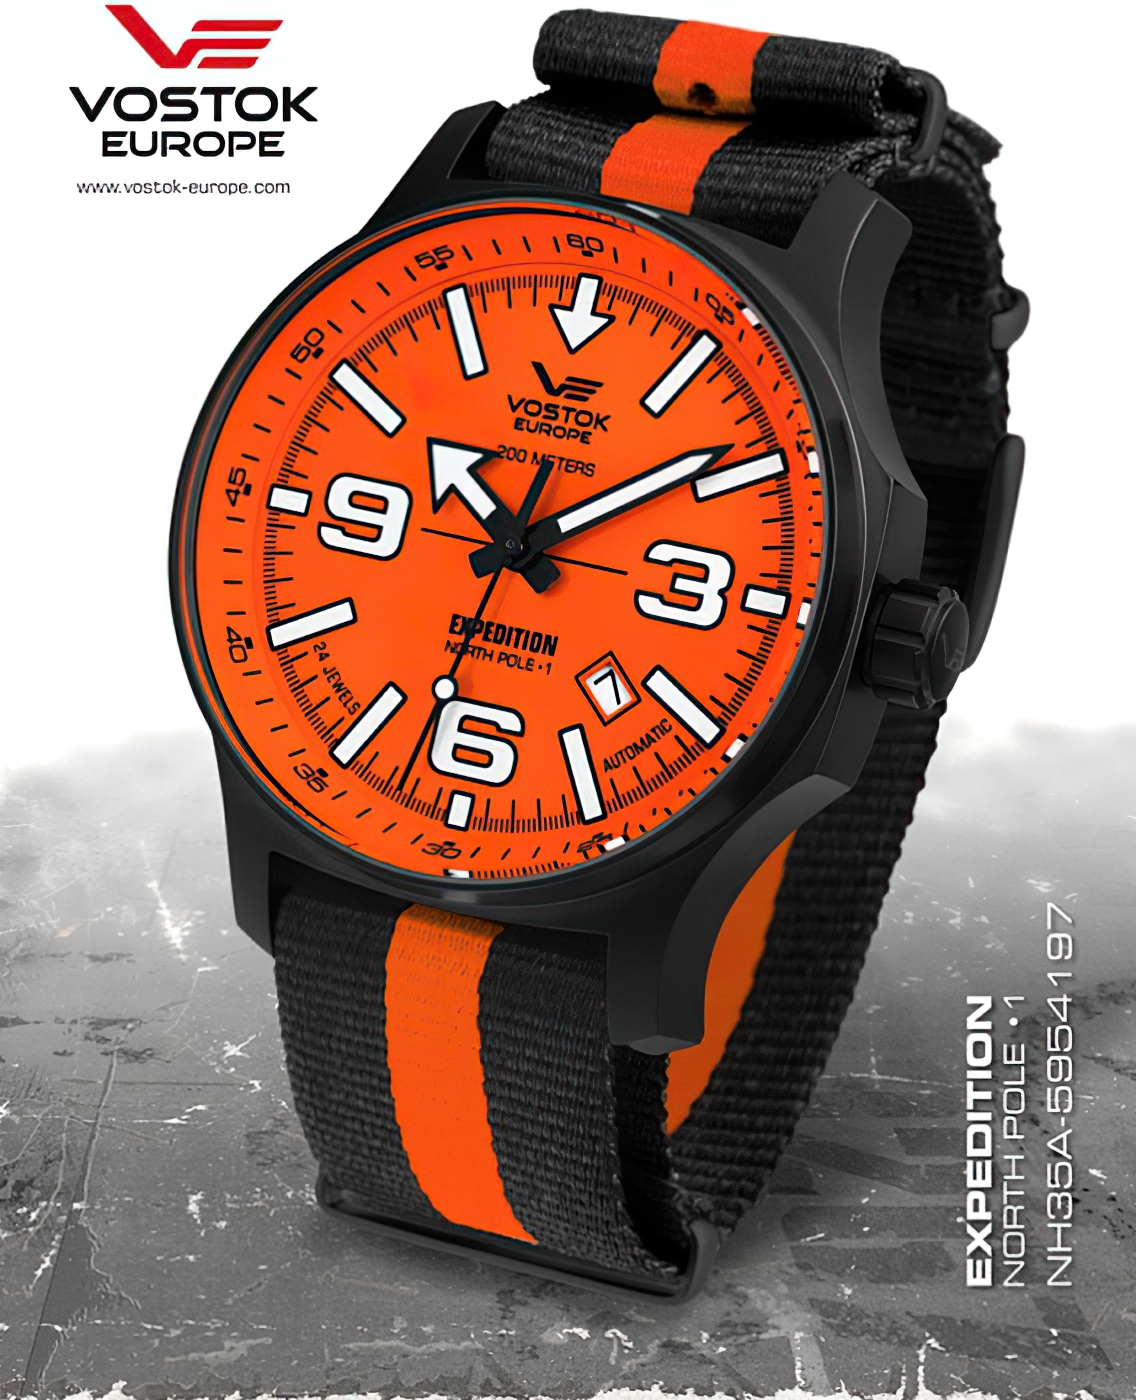  Vostok Europe Expedition Nordpol 1 Automatik schwarz/orange 